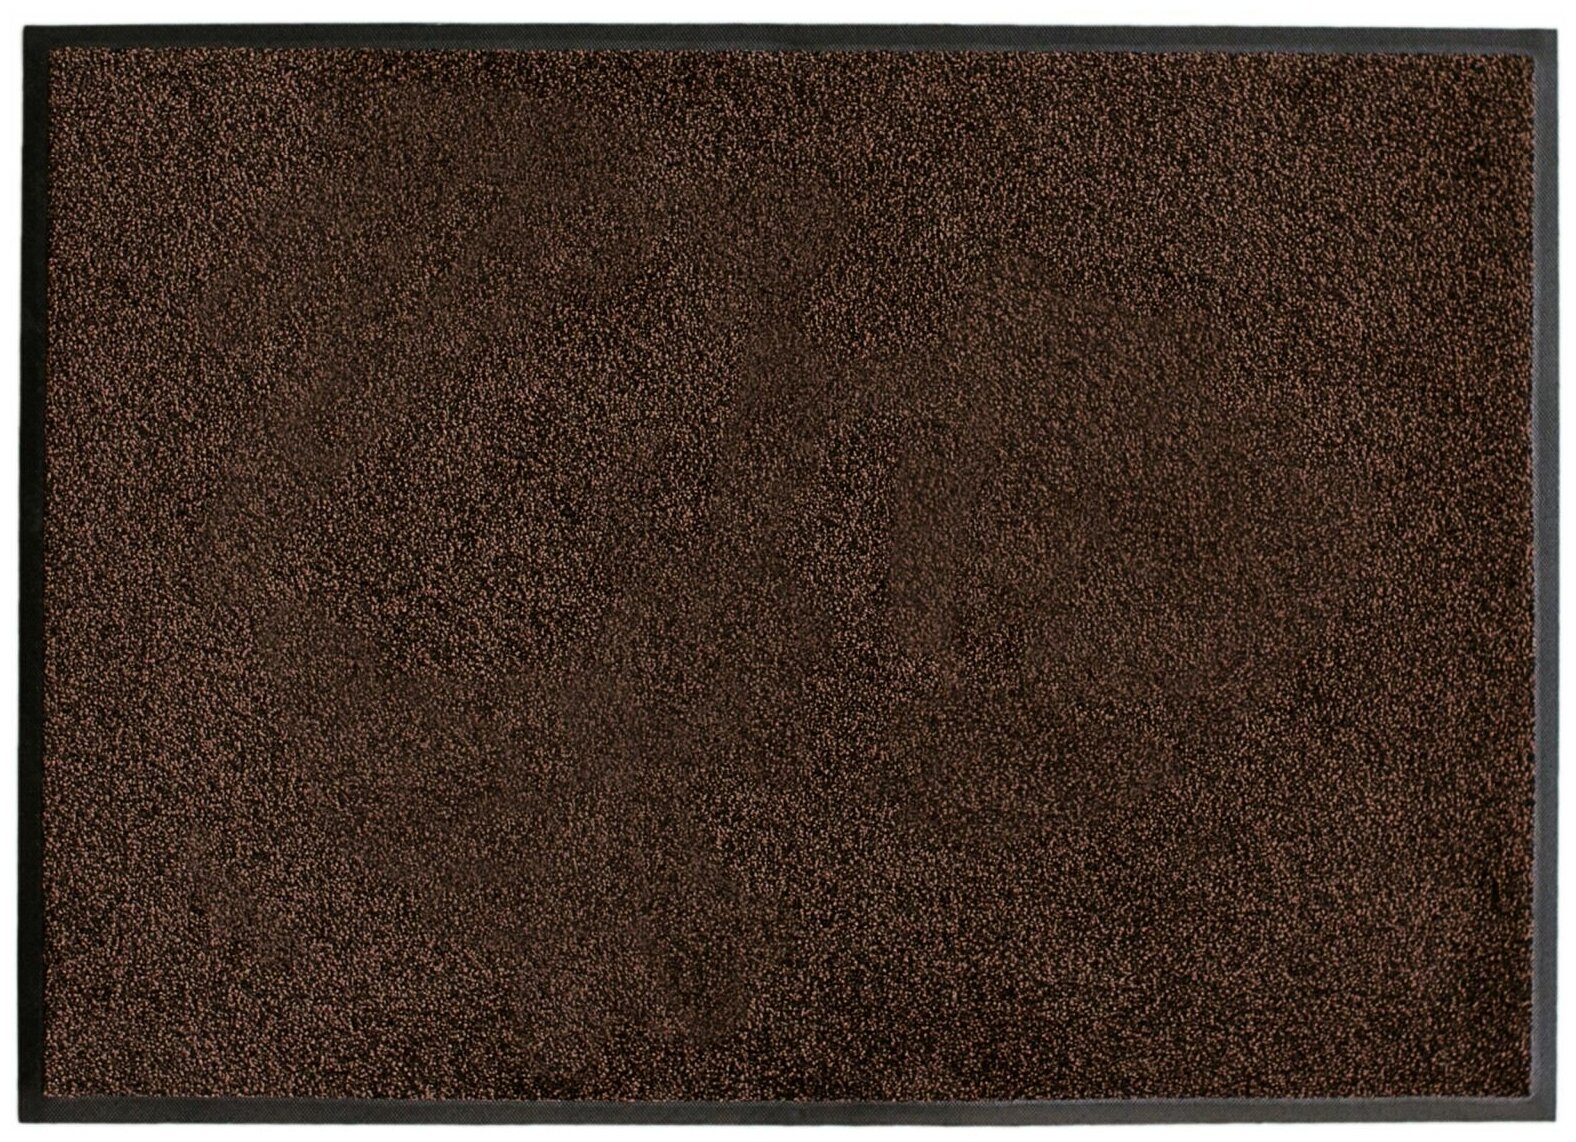 Ворсовый ковер на резиновой основе ENTRANCE brown 60x85 — купить по выгодной цене на Яндекс.Маркете